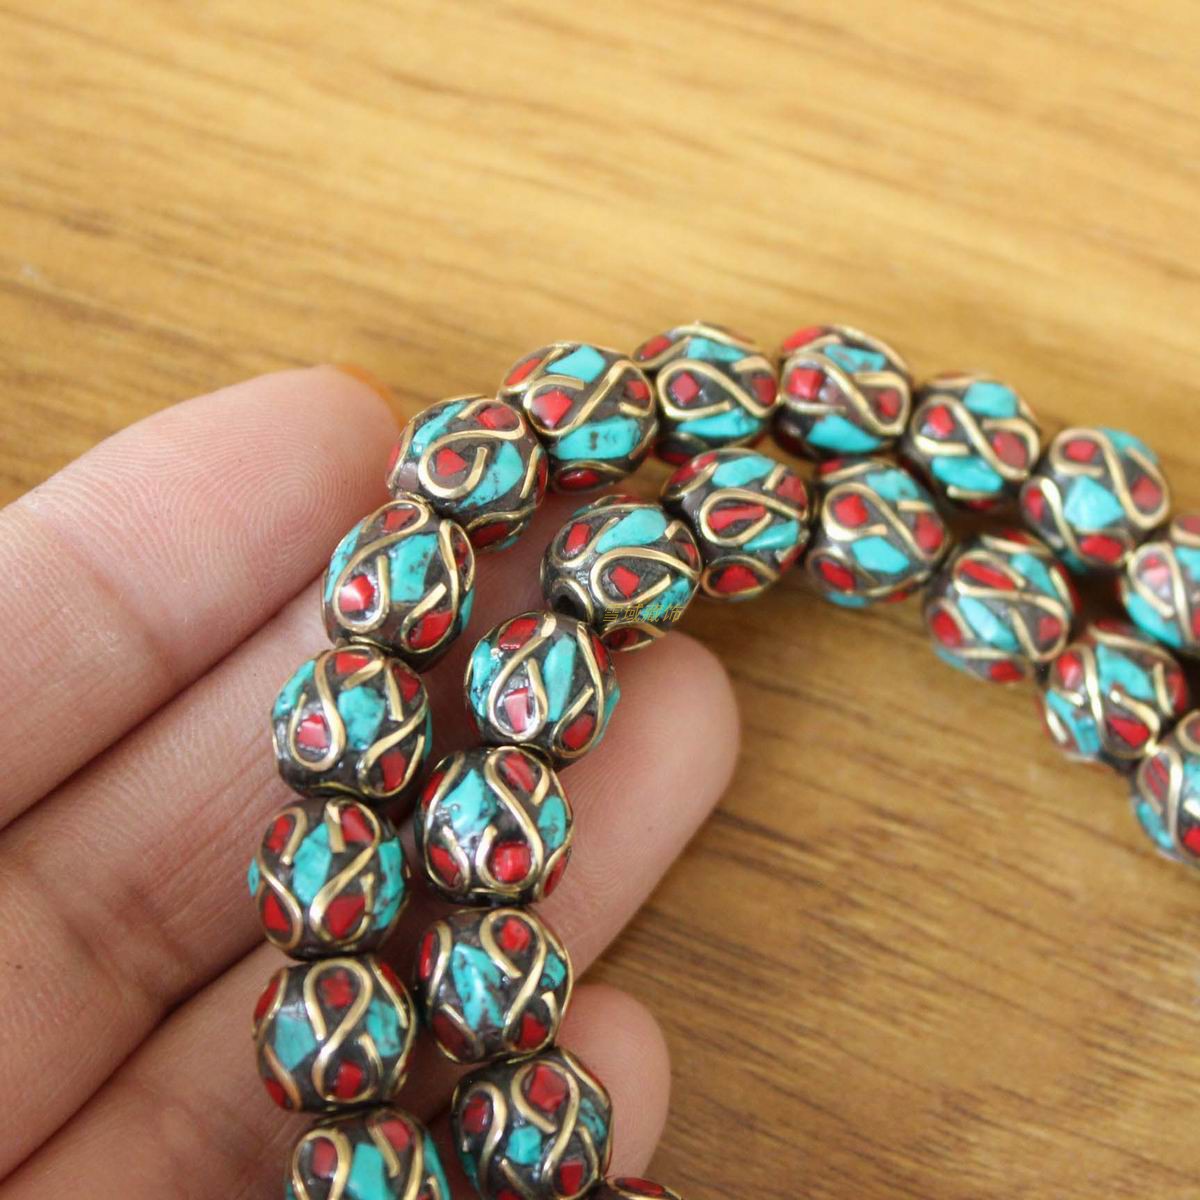 尼泊尔西藏首饰品散珠子绿松石手工制作DIY项链手链佛珠隔珠包邮